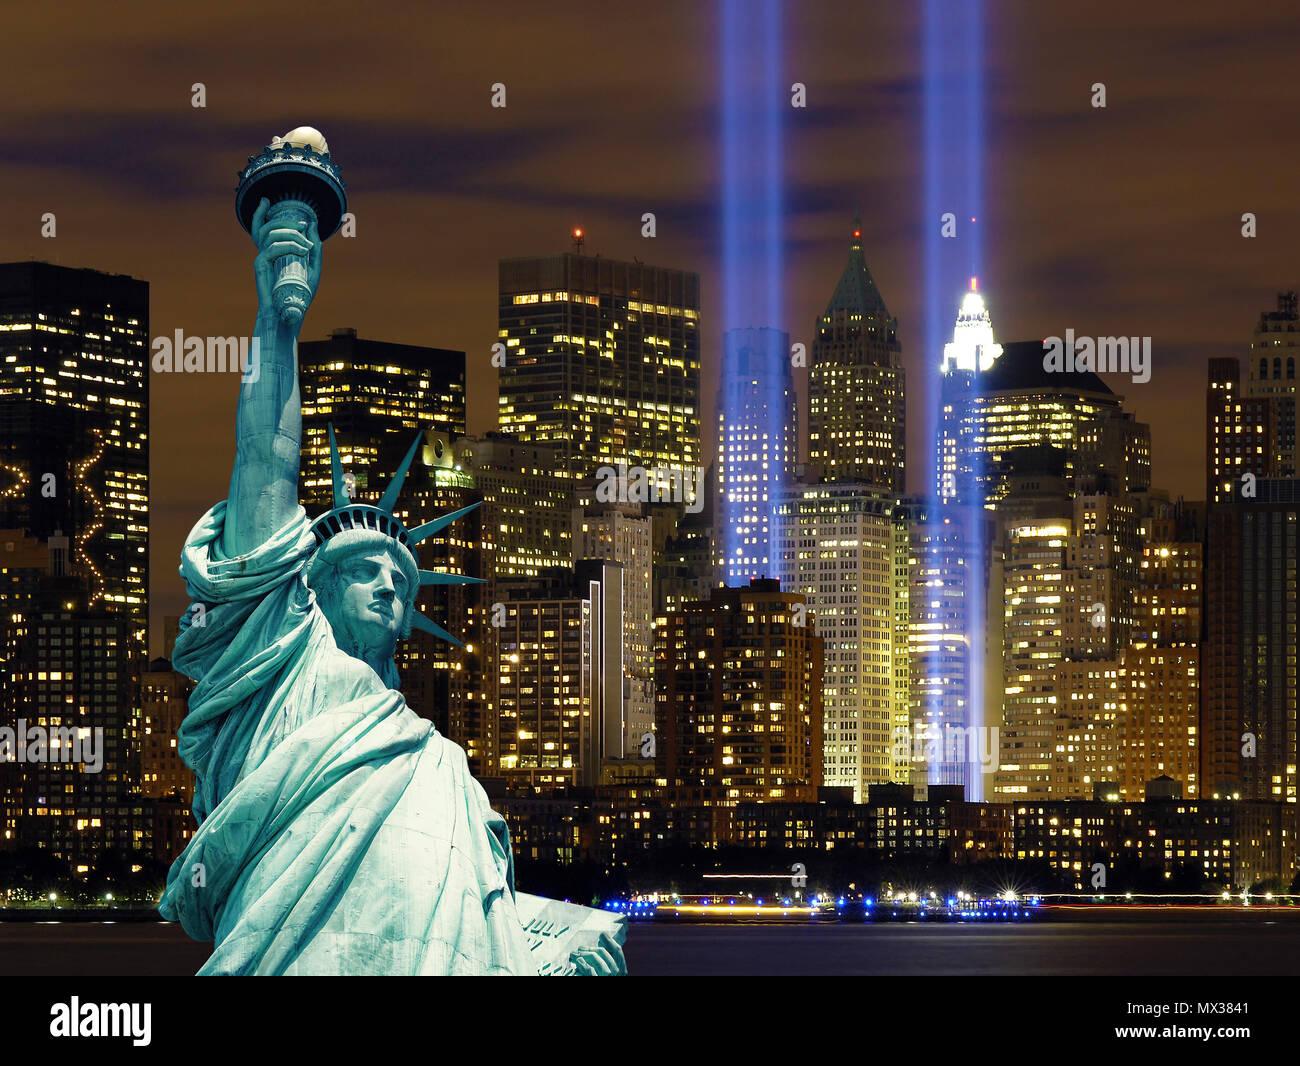 Manhattan strahlen Licht und die Freiheitsstatue bei Nacht, New York City  Stockfotografie - Alamy